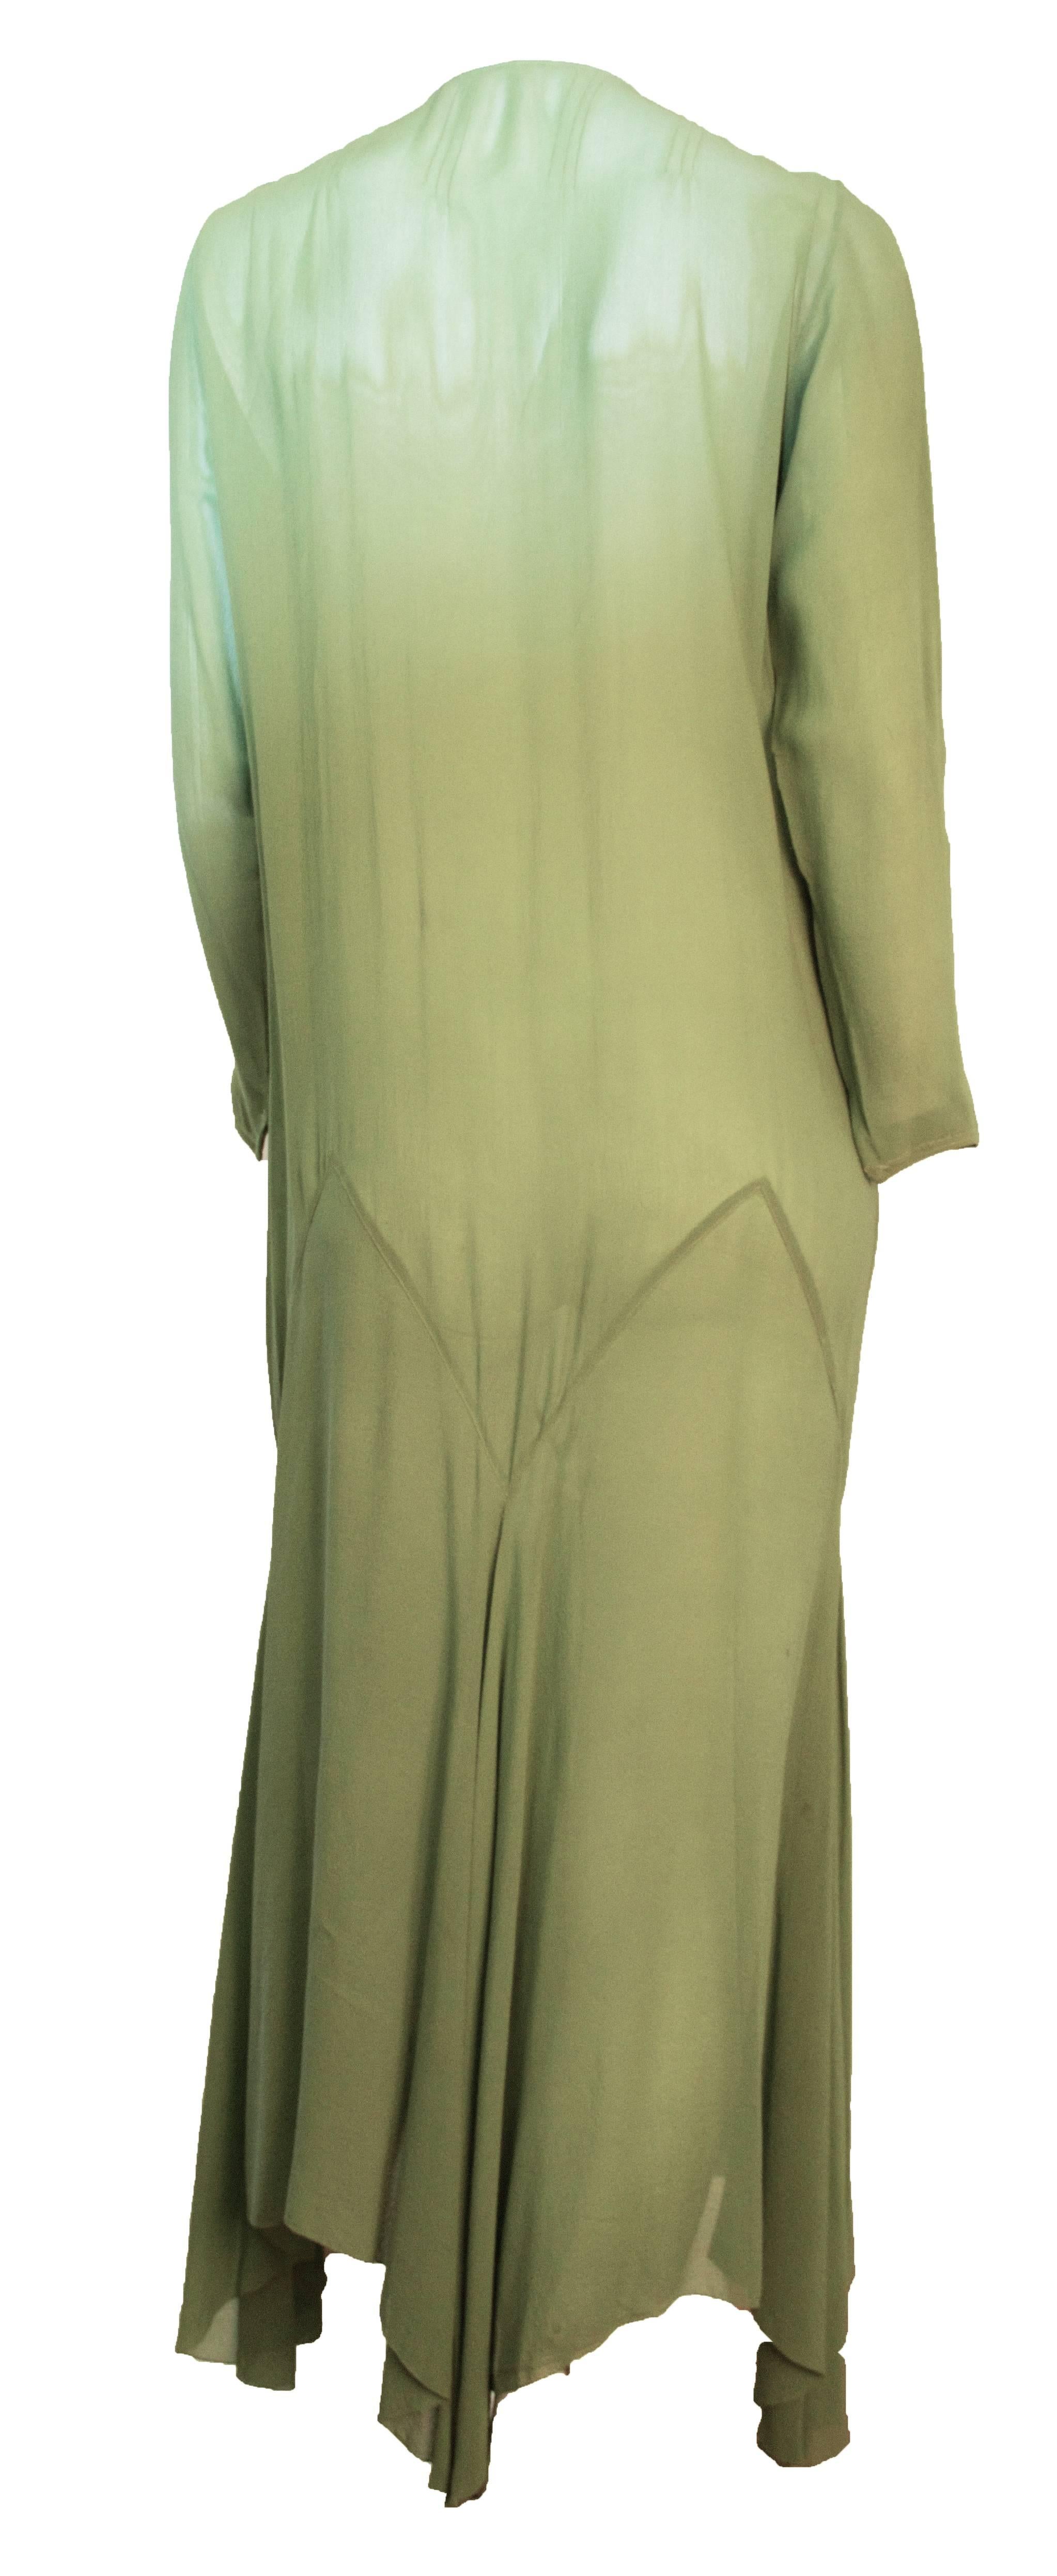 Moosgrünes, langärmeliges Chiffonkleid mit Taschentuch-Saum aus den 20er Jahren. Perlenbesatz am vorderen Halsausschnitt. 